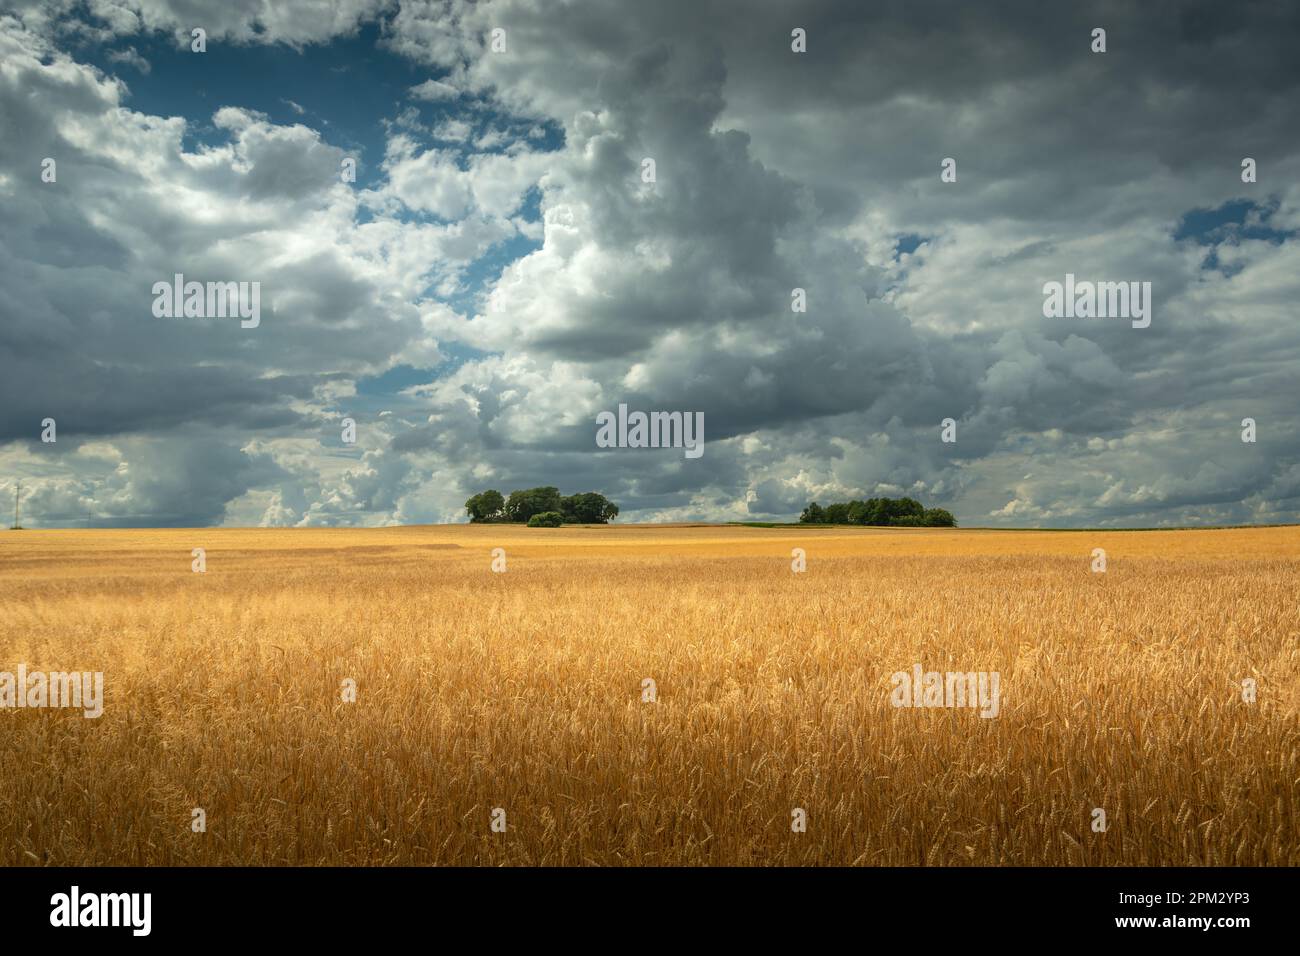 Wolkiger Himmel über einem goldenen Feld mit Getreide und Bäumen am Horizont, Sommer Landtag, Staw, Lubelskie, Polen Stockfoto